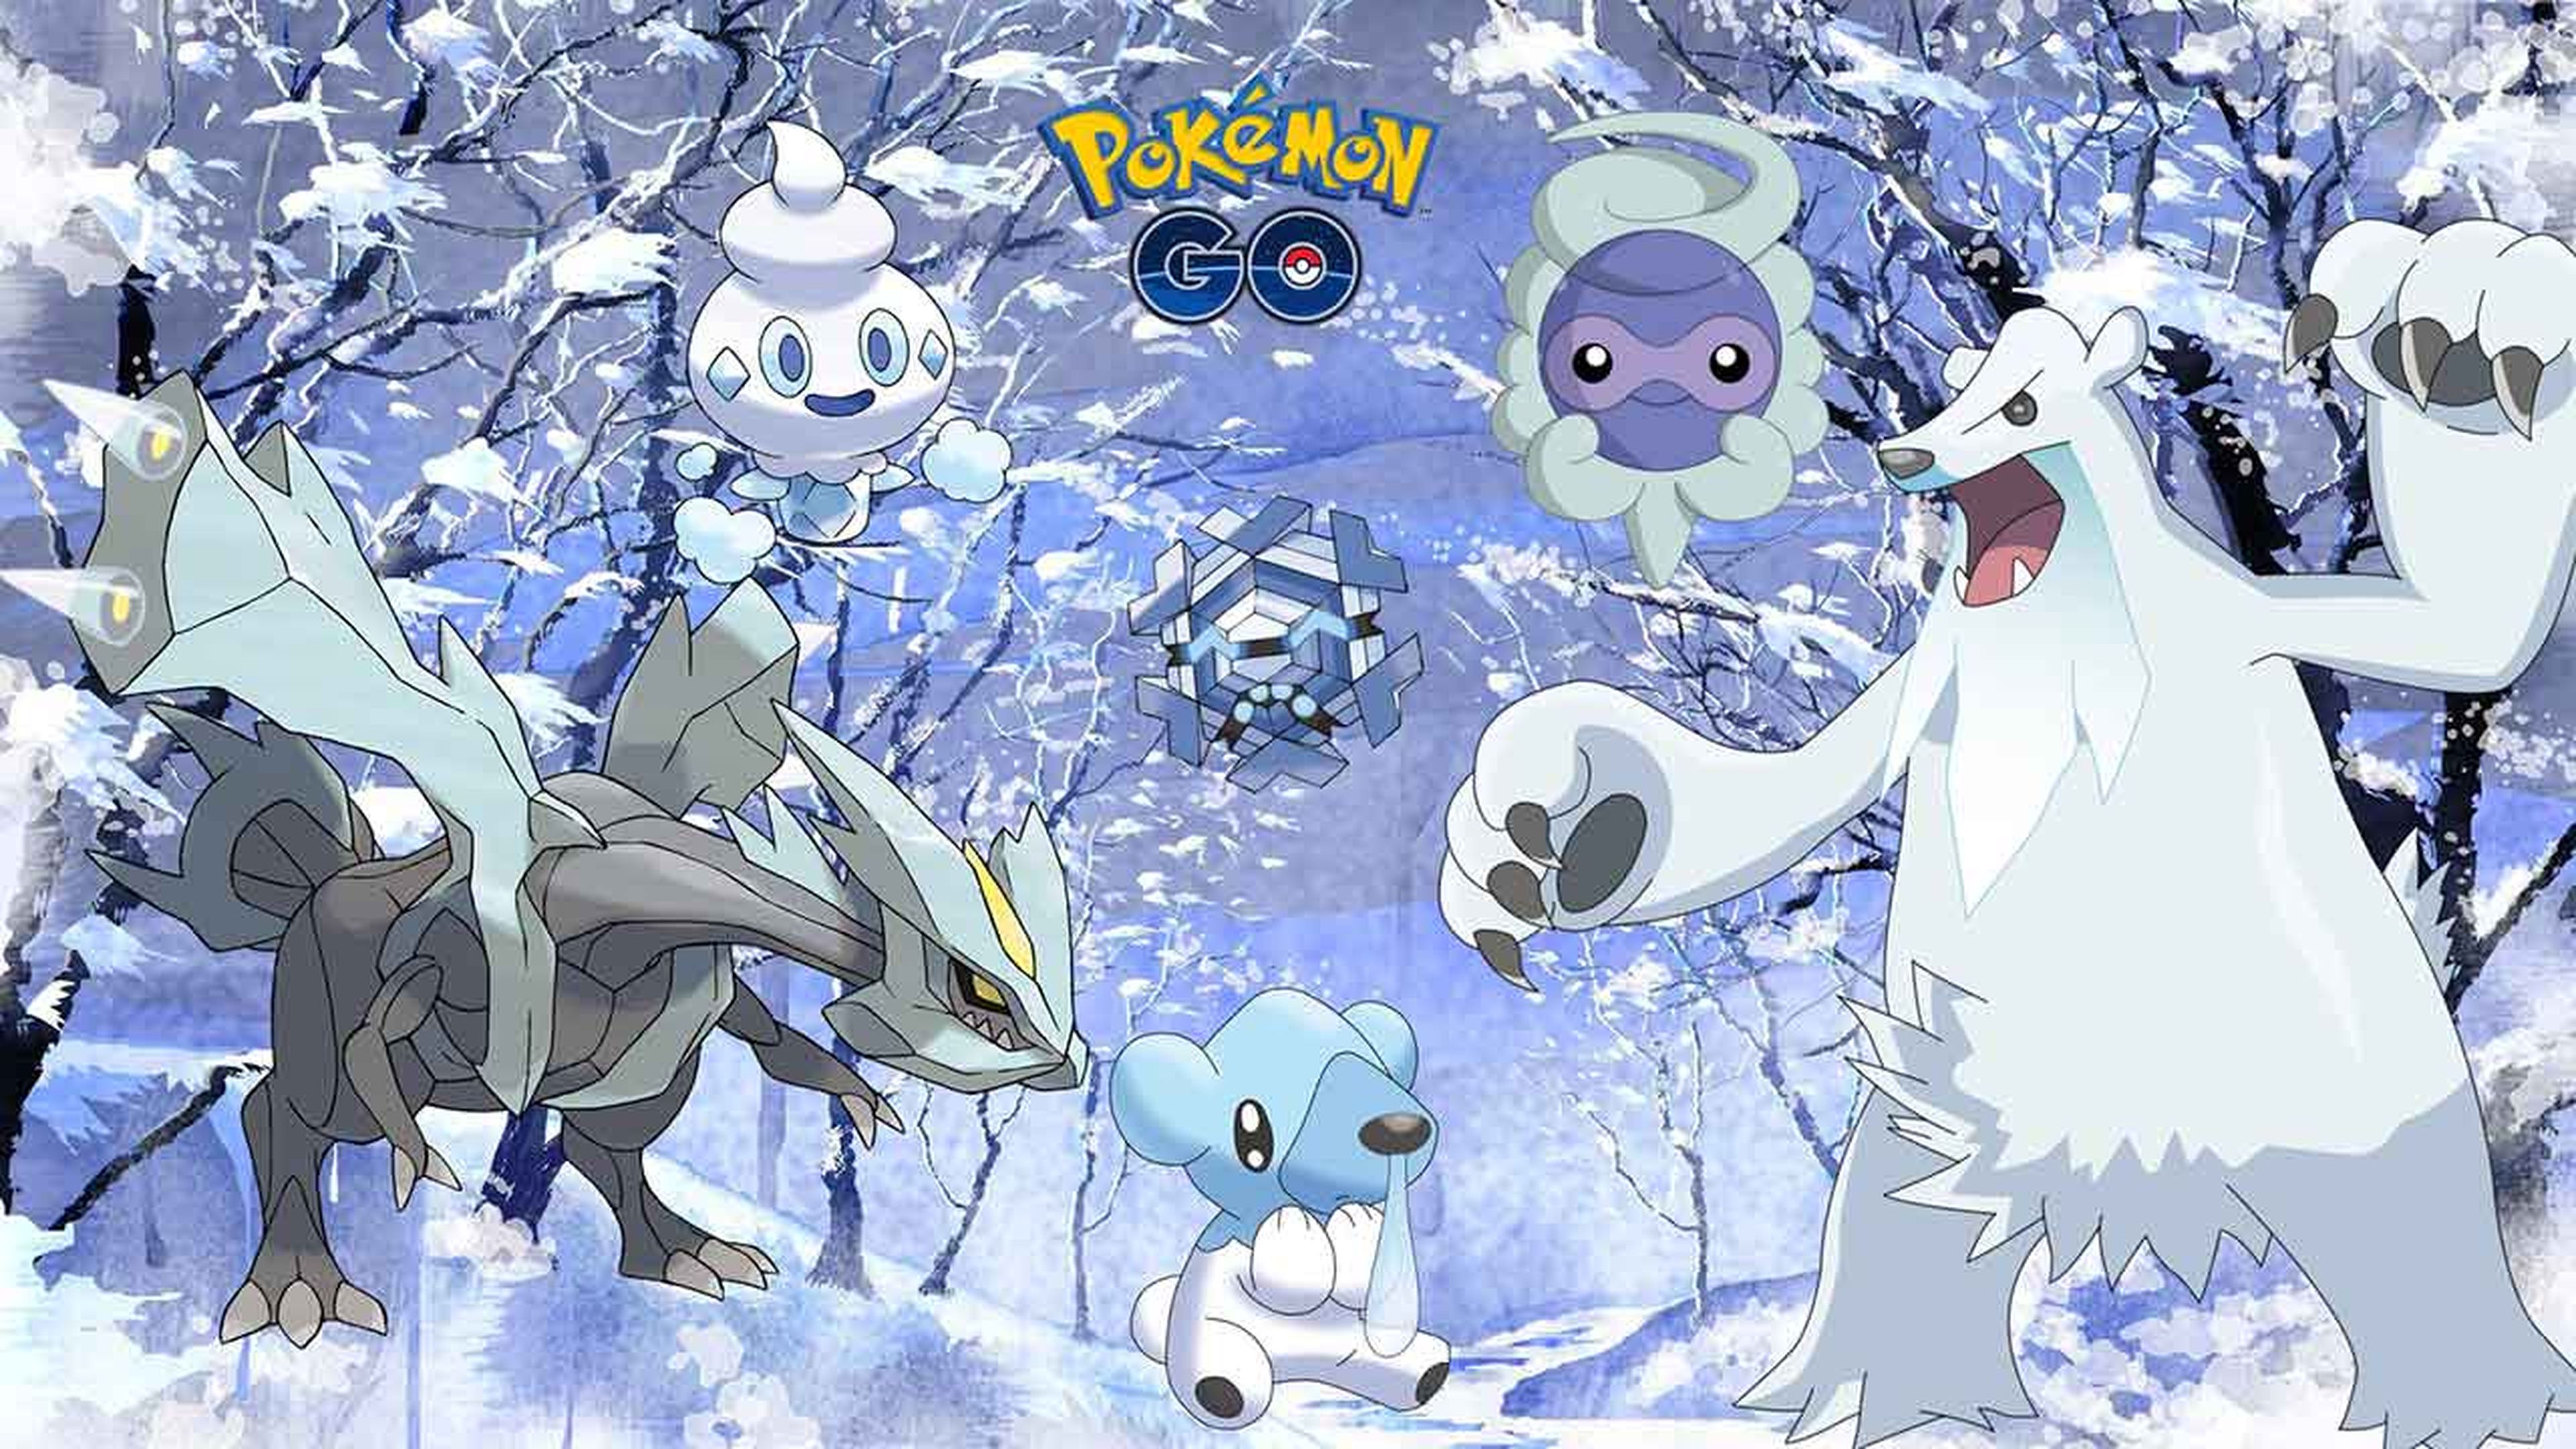 OS EXPLICO TODOS los NUEVOS ATAQUES de CADA POKÉMON y el REBALANCE en  Pokémon GO! [Keibron] 